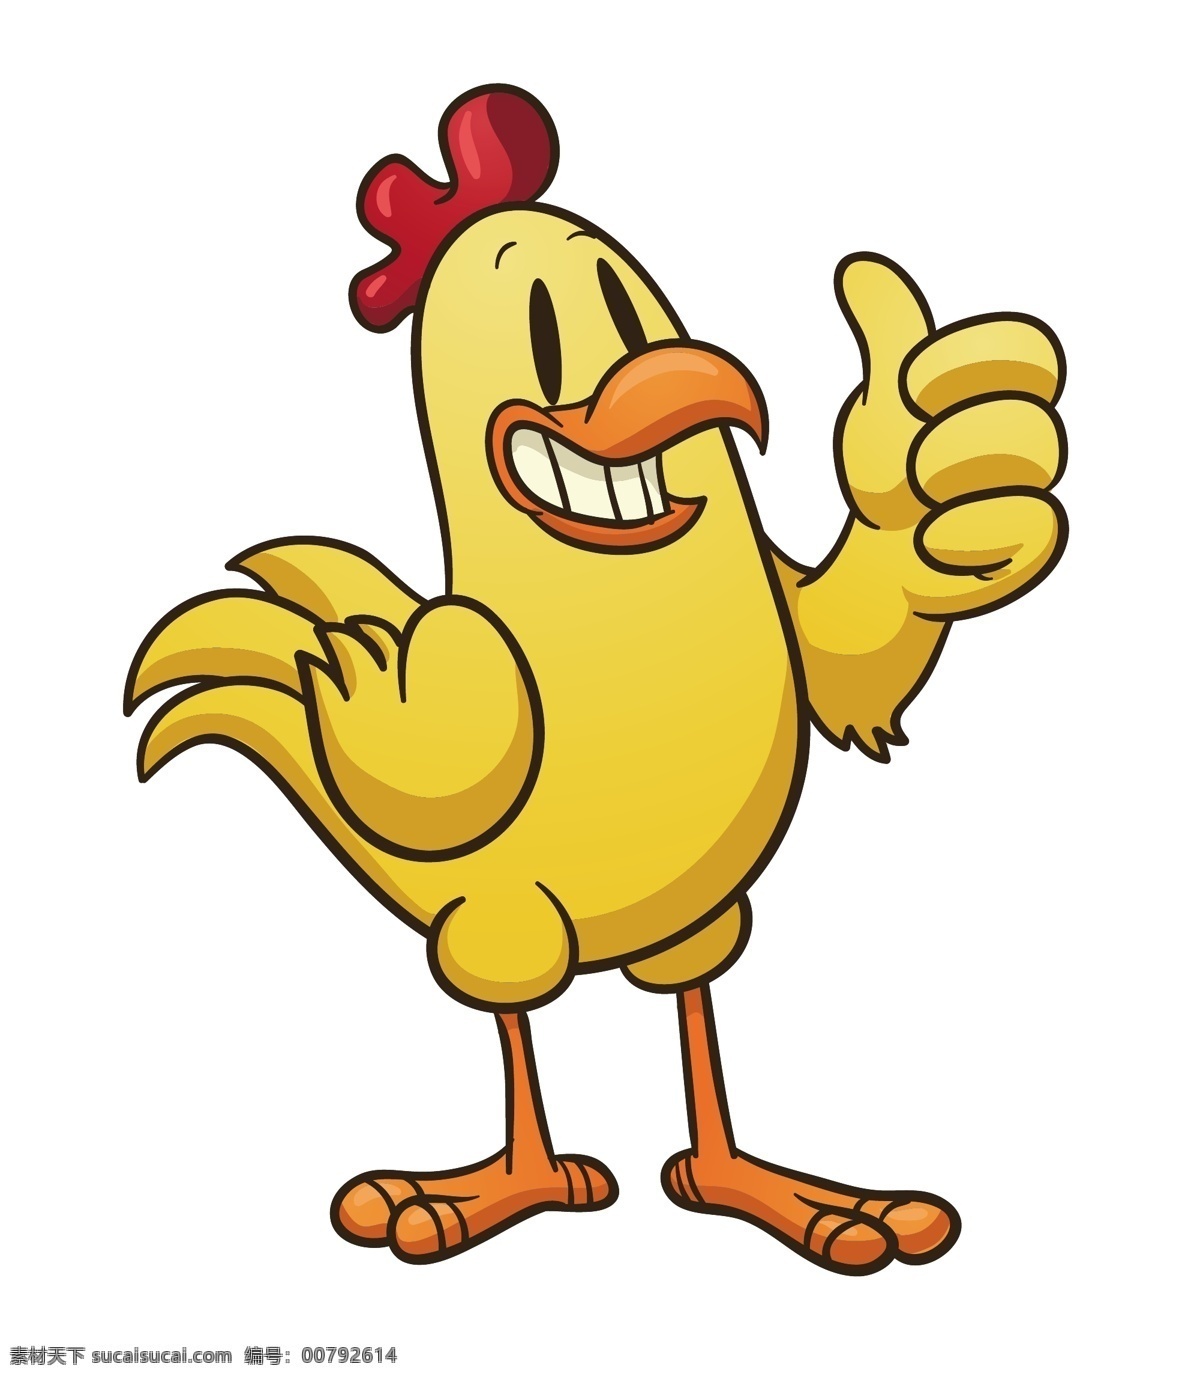 矢量 最 棒 公鸡 卡通 表情 卡通公鸡表情 卡通公鸡 鸡 可爱鸡 矢量鸡